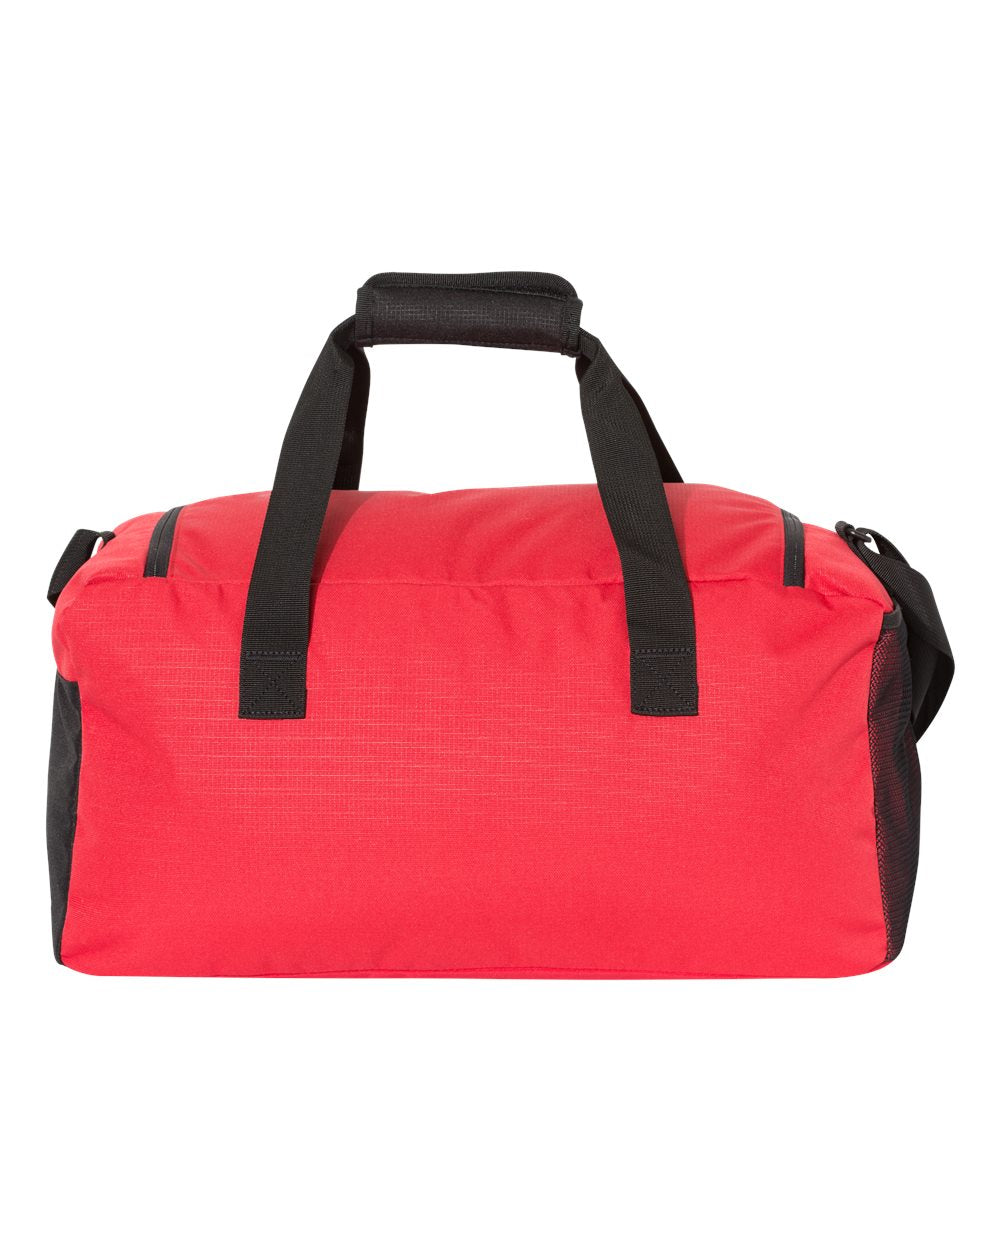 Central Coast Adidas Duffel Bag